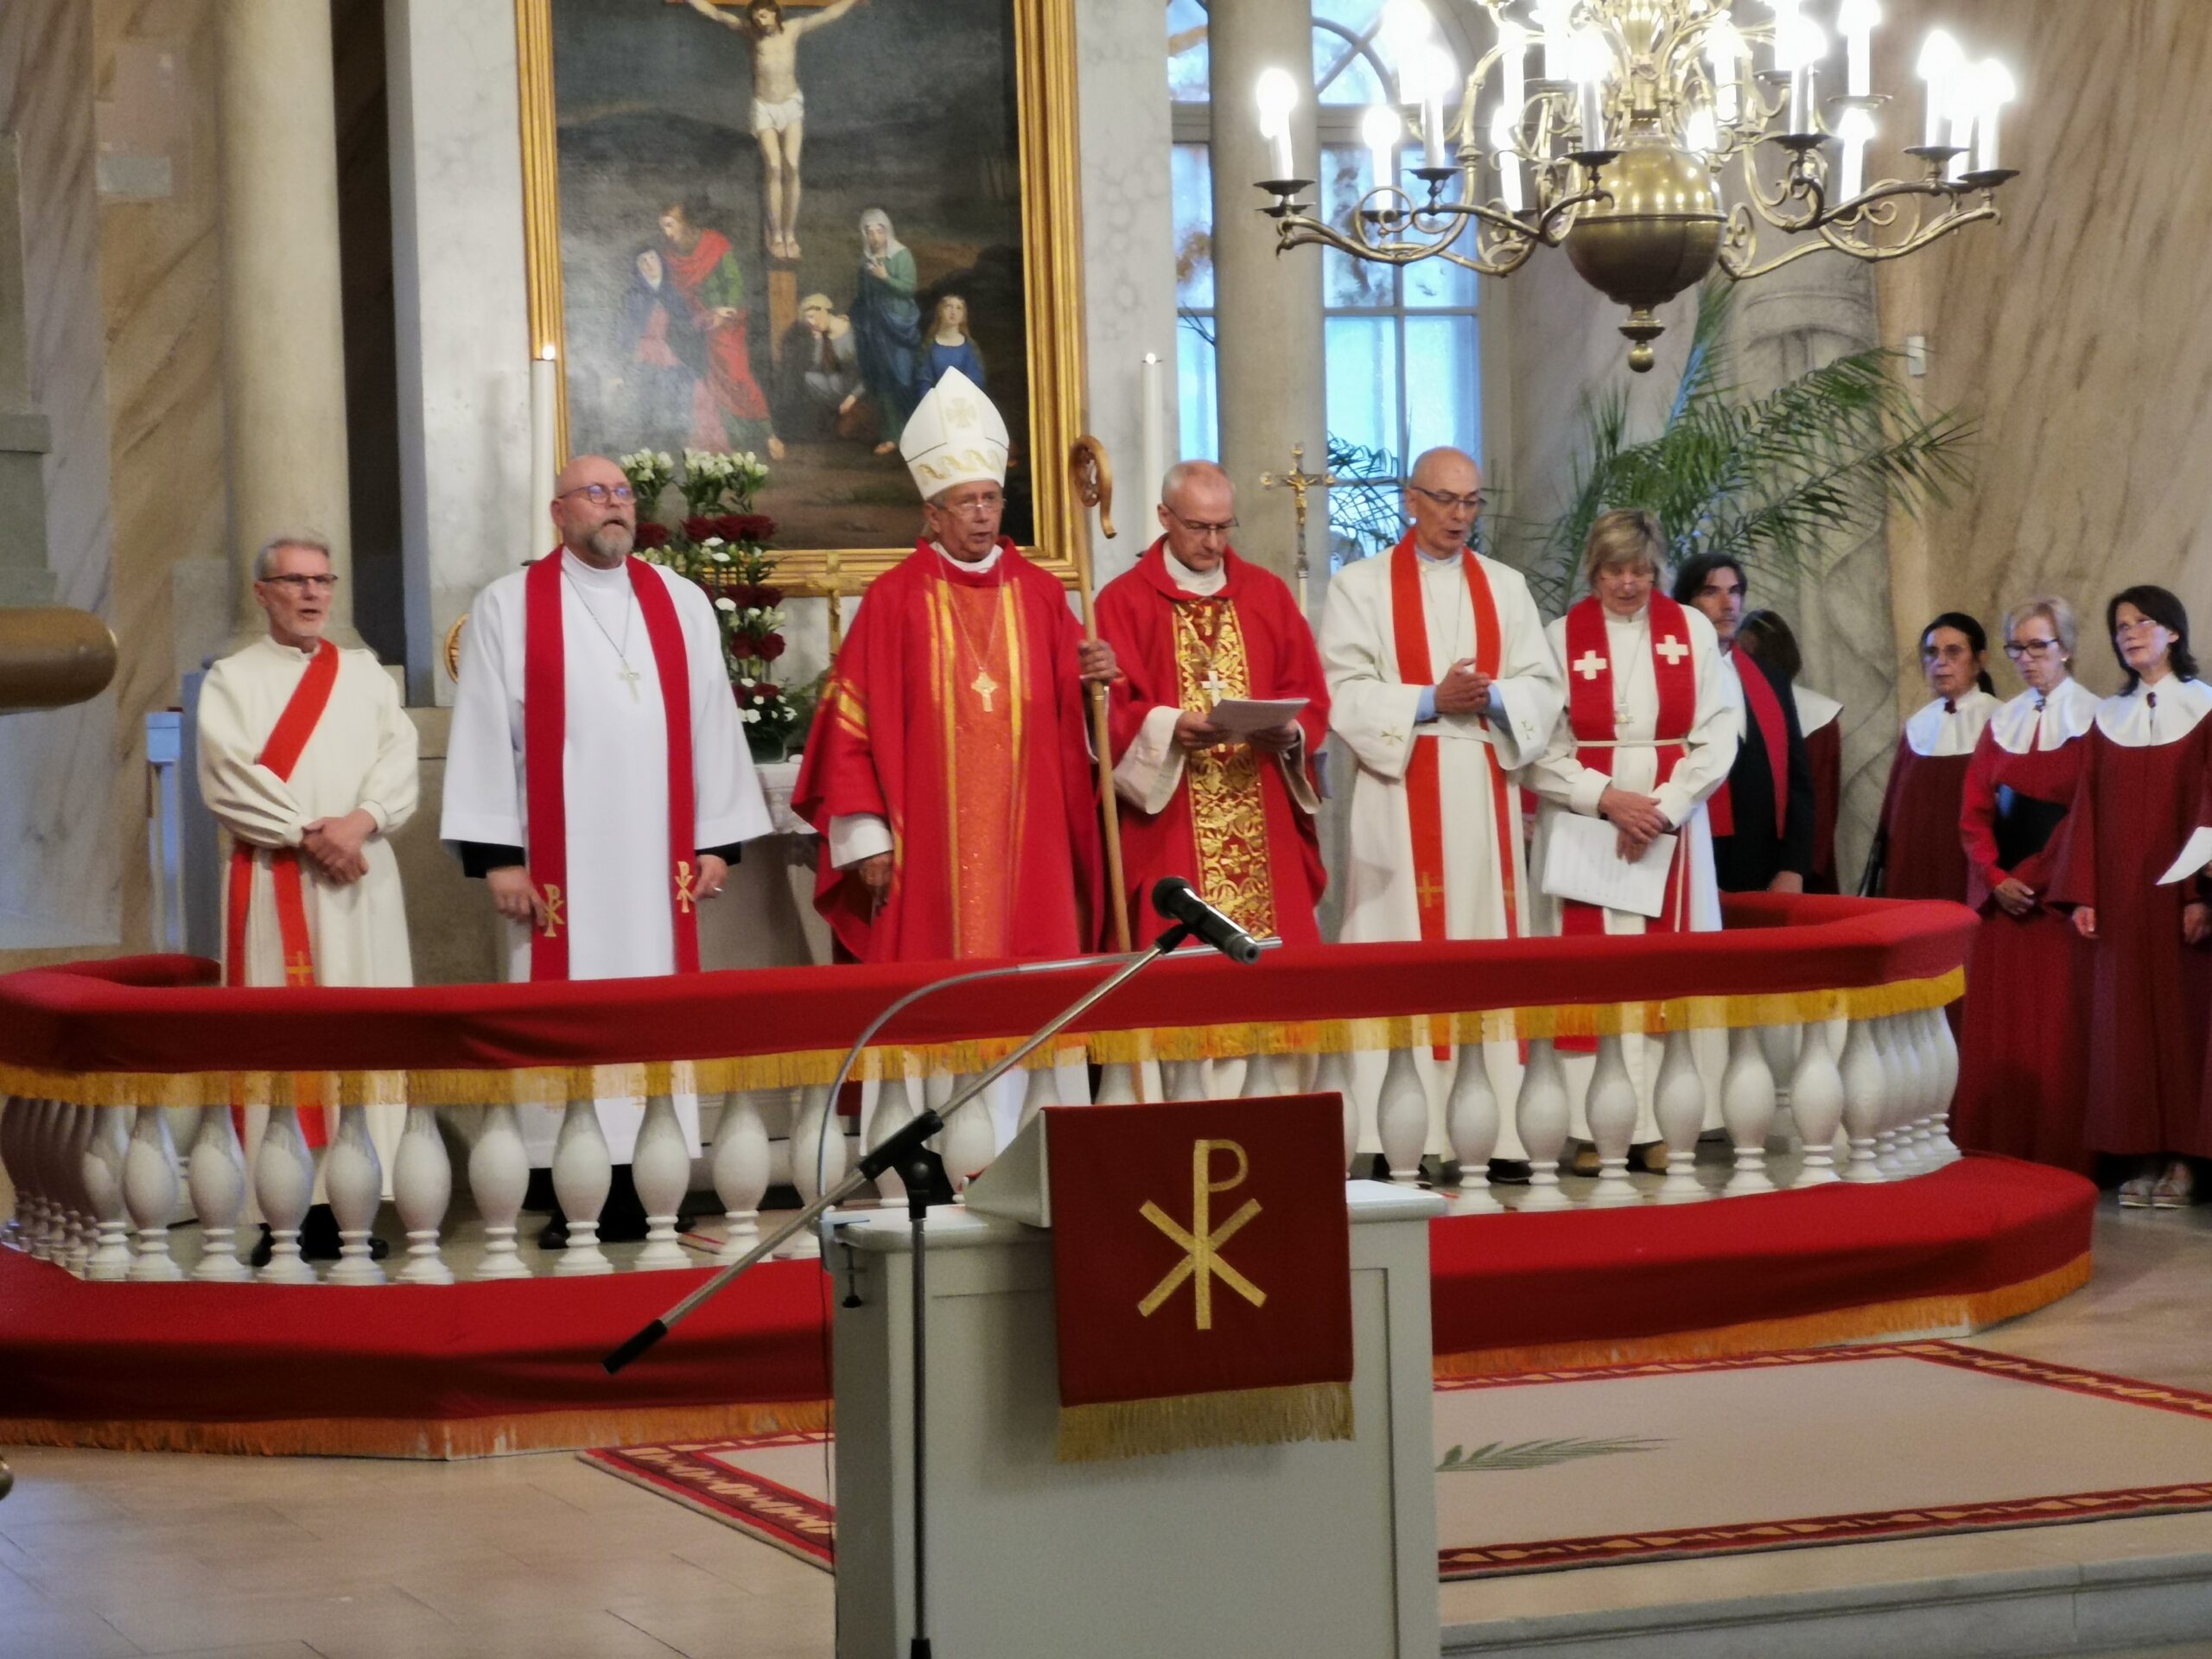 Kuressaare Laurentiuse kogudus tähistas 500. sünnipäeva